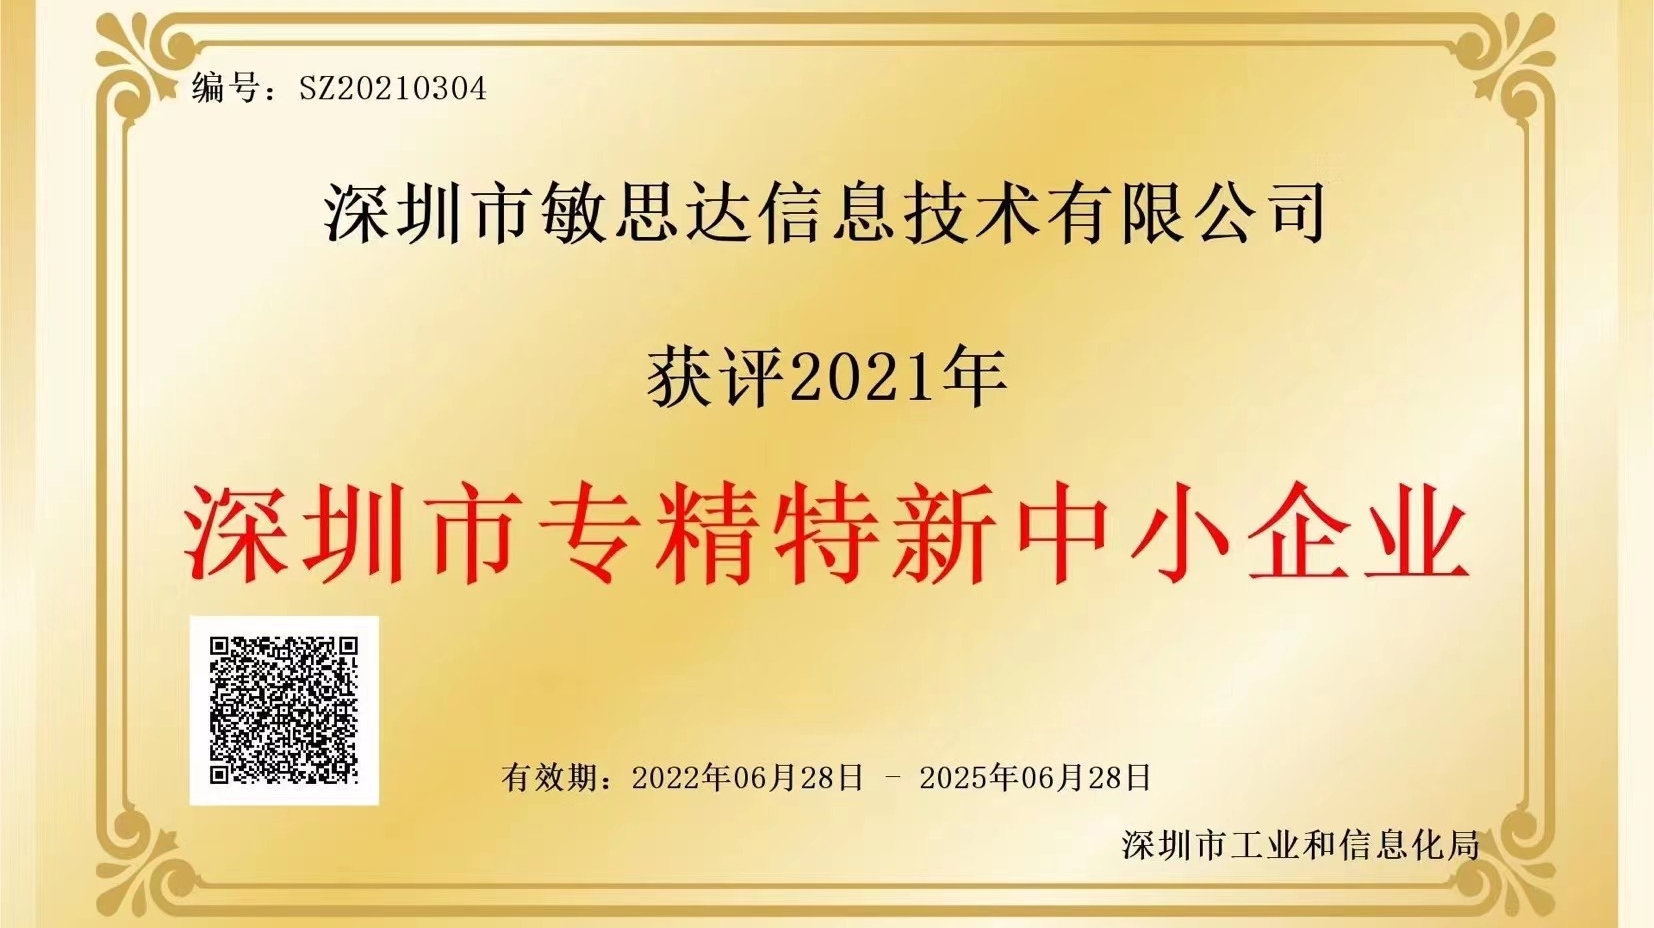 敏思达荣获2021年度深圳市“专精特新”认证